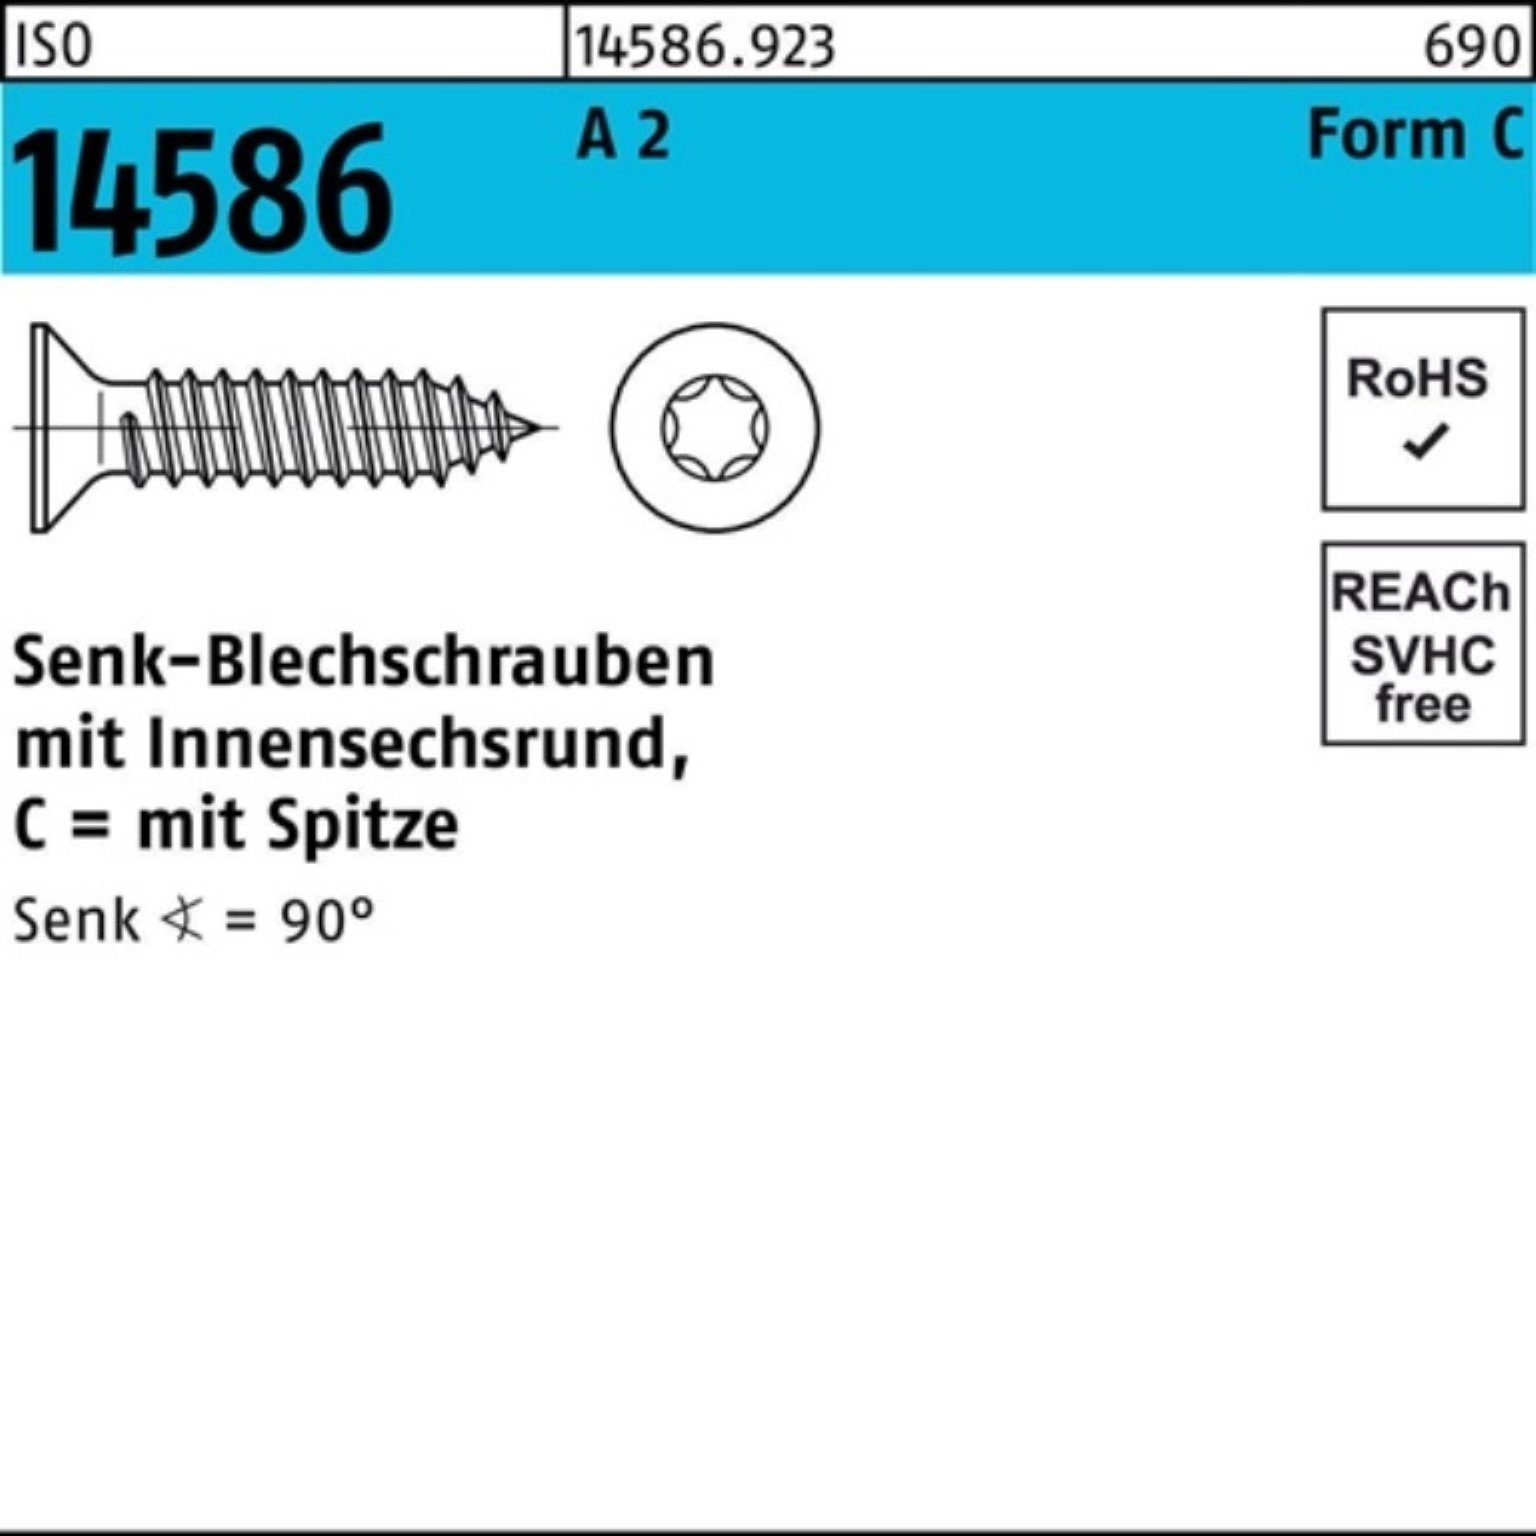 Reyher Schraube 1000er Pack Senkblechschraube -C 22 3,5x 2 ISR/Spitze A ISO T15 14586